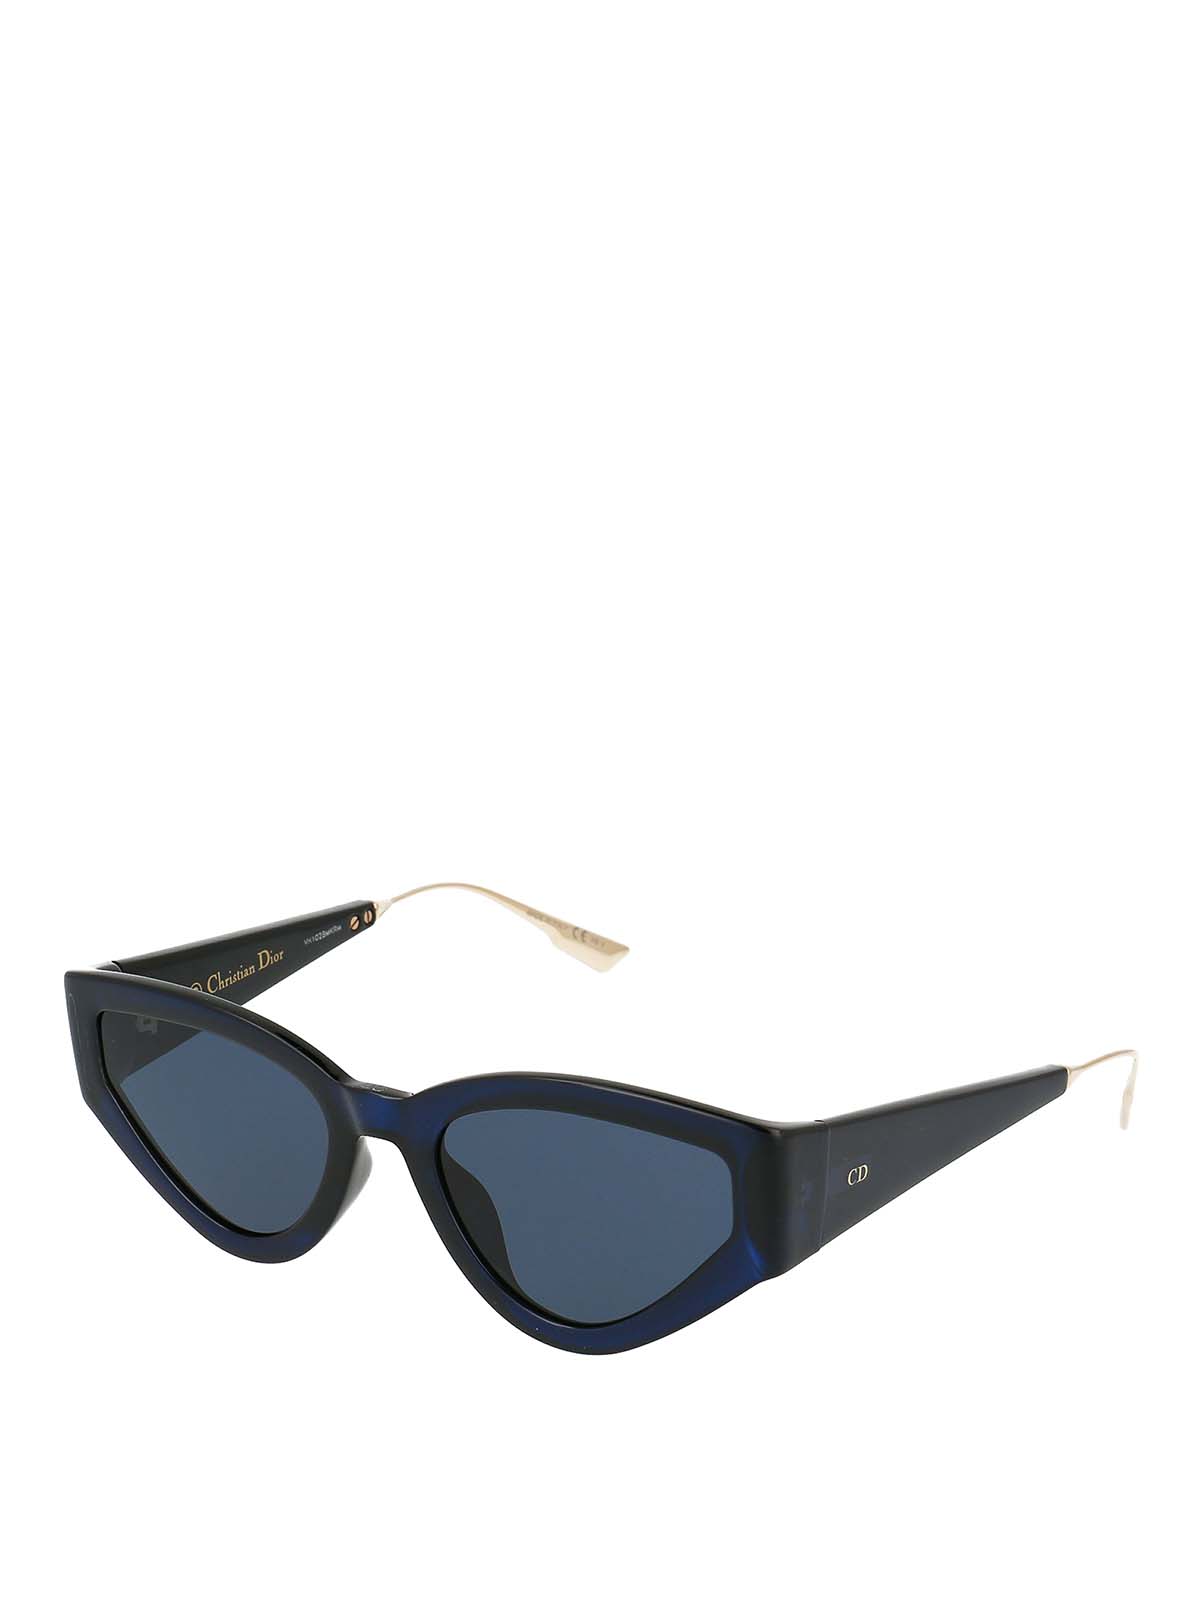 dior sunglasses blue